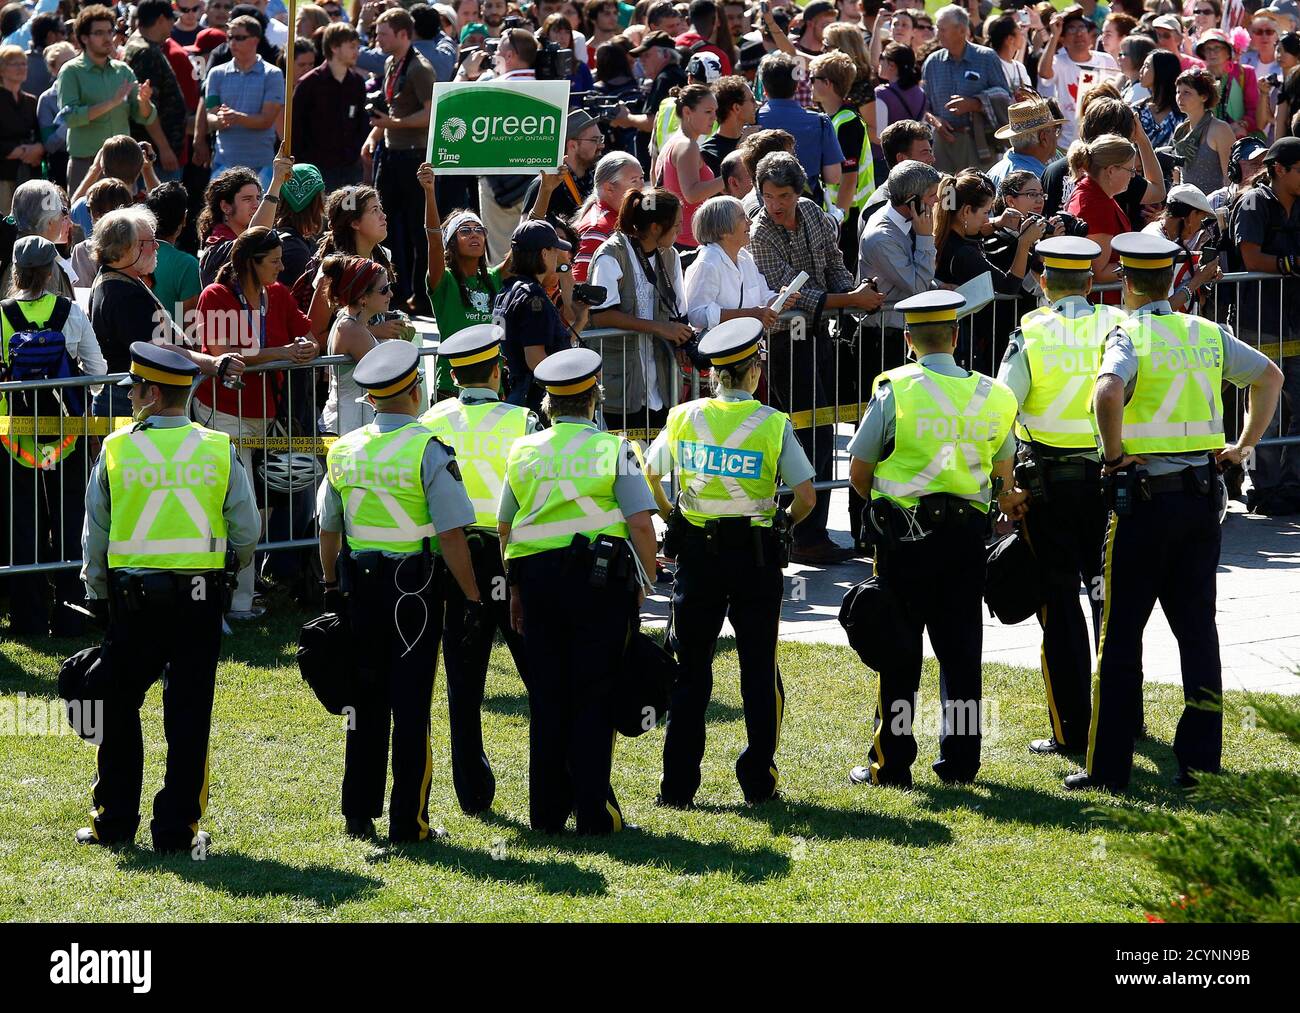 Polizei Auge ein auf Demonstranten während einer Protestaktion gegen die Keystone XL Pipeline am Parliament Hill in Ottawa 26. September 2011. Dutzende wurden in den Protest gegen die Pipeline verhaftet, die, wenn abgeschlossen, von Kanada an der Golfküste der Vereinigten Staaten erstrecken. REUTERS/Chris Wattie (Kanada - Tags: Unruhen Verbrechen Recht Politik) Stockfoto